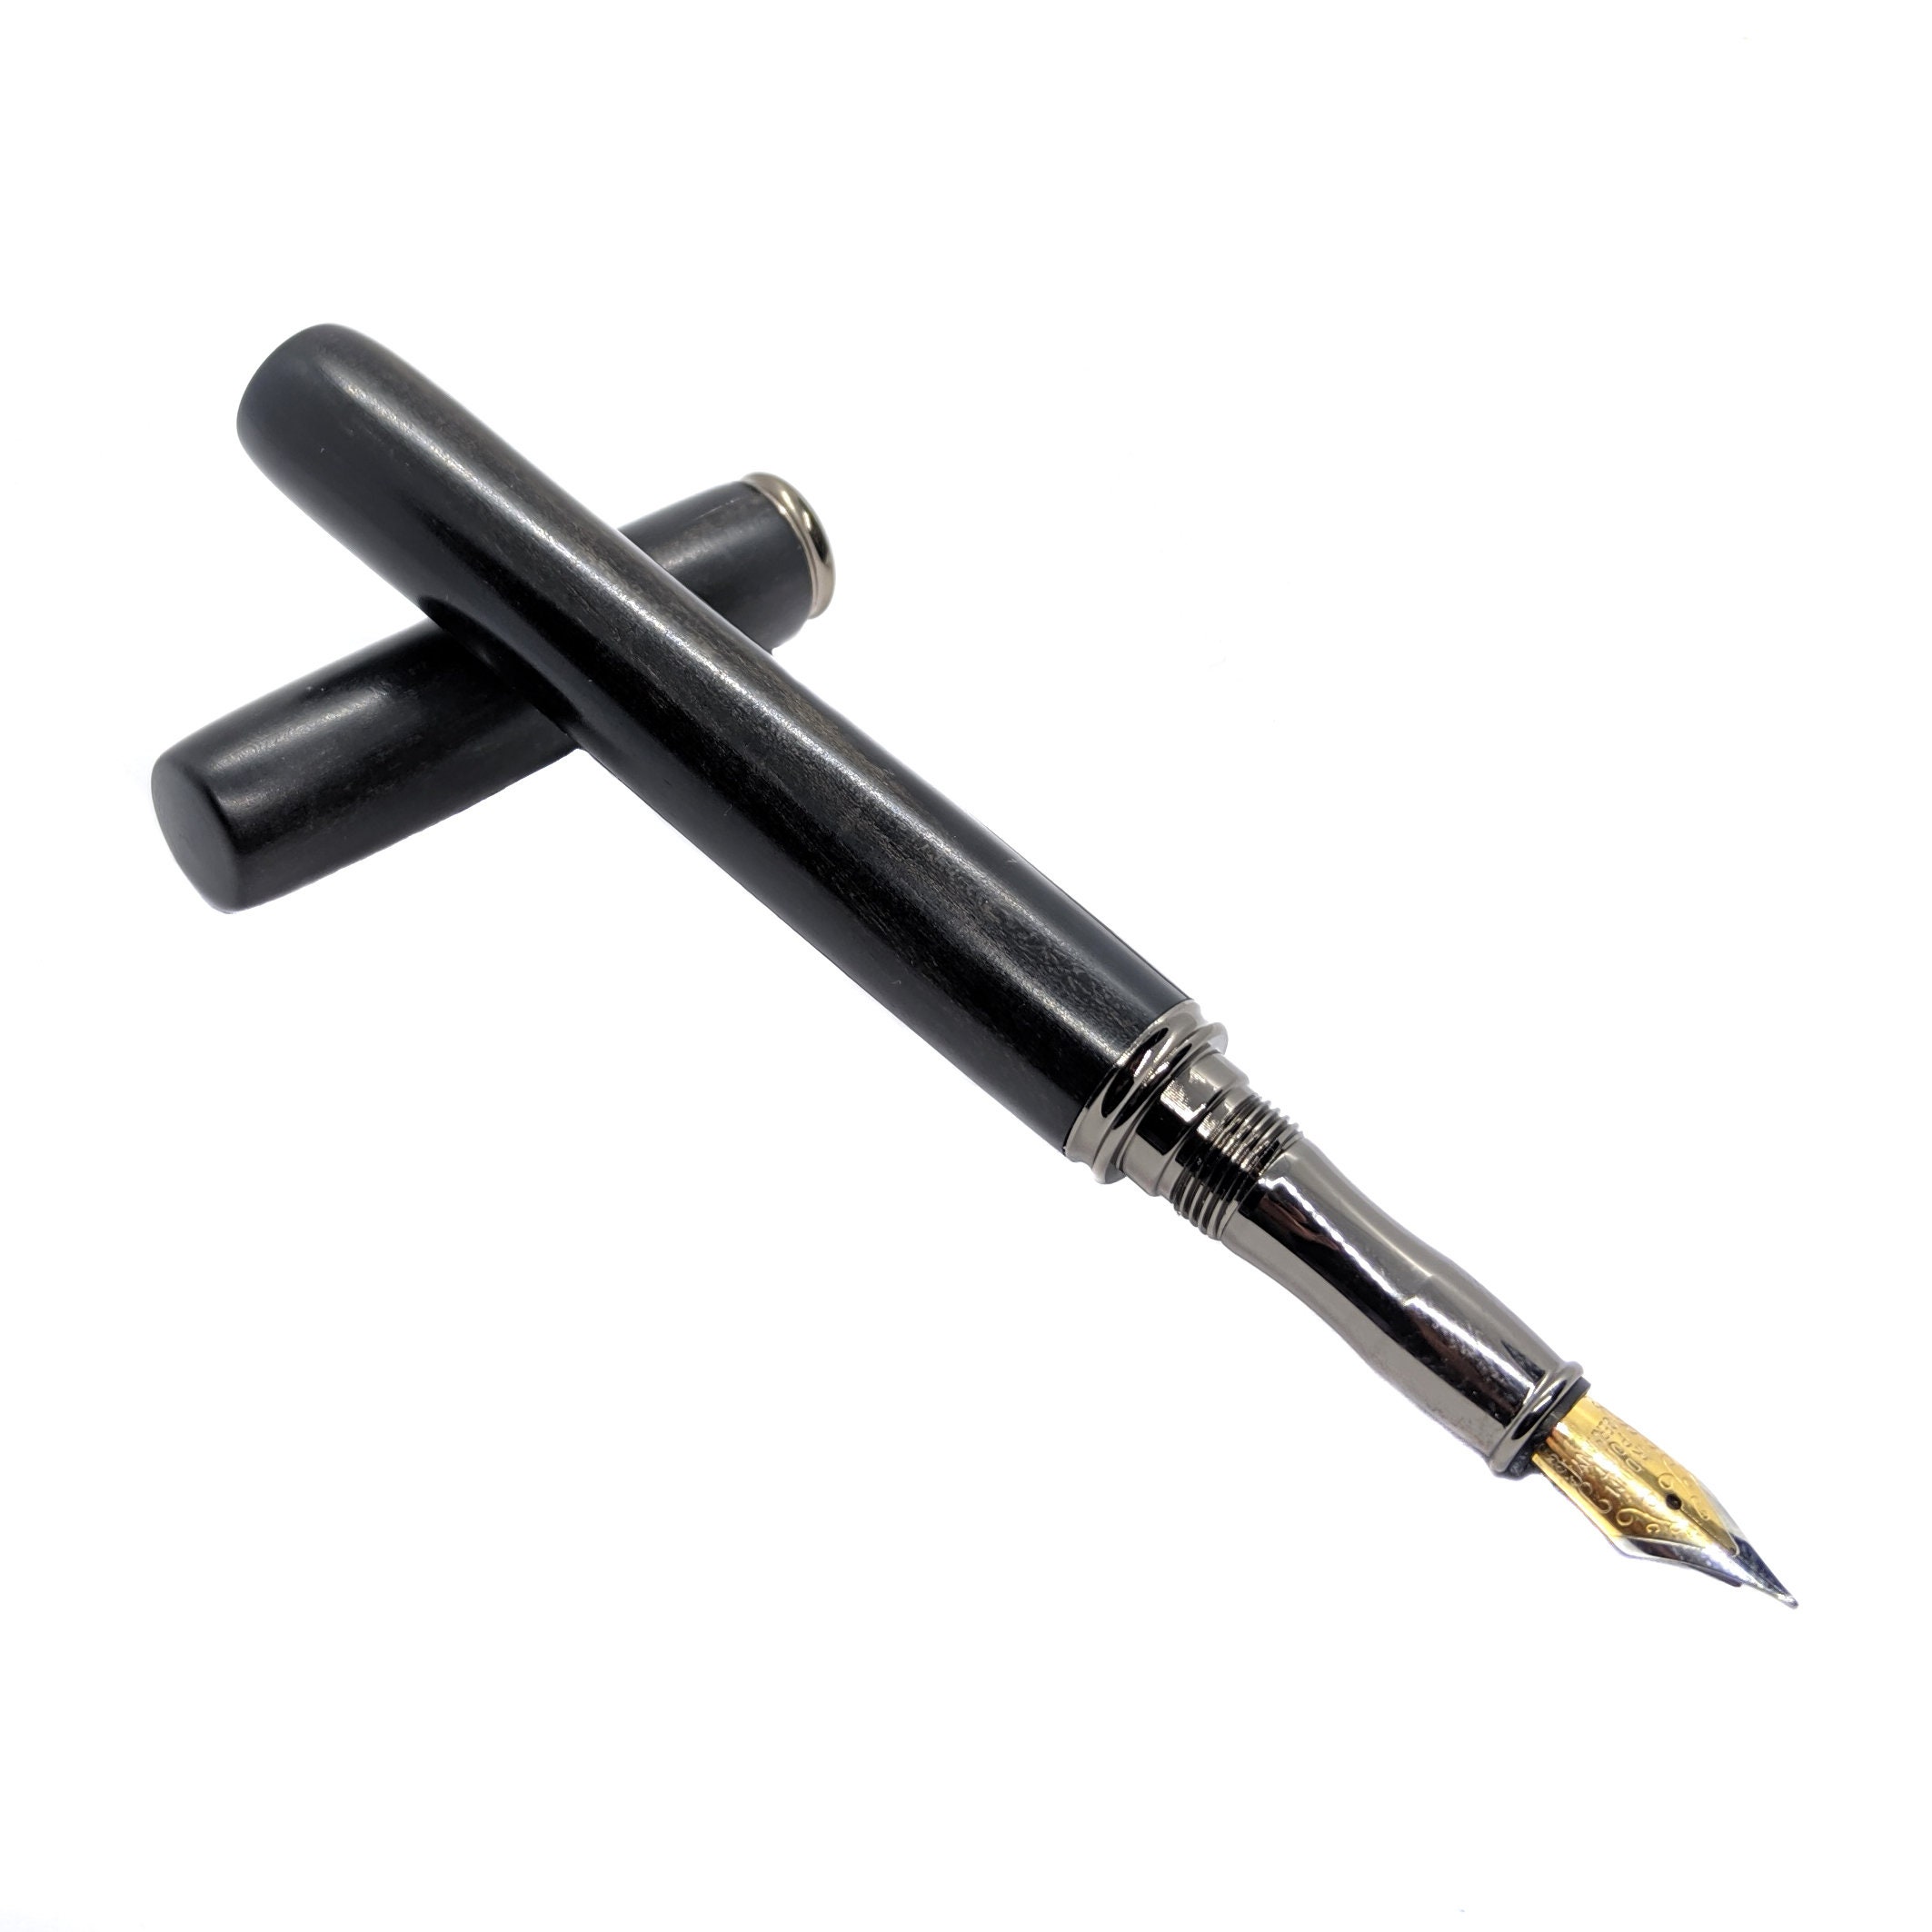 Fountain Pen, Handcrafted Wood Pen, Black & White Ebony, Executive Pen,  Wood Fountain Pen, Fancy Pen, Turned Pen, Wooden Fountain Pen 